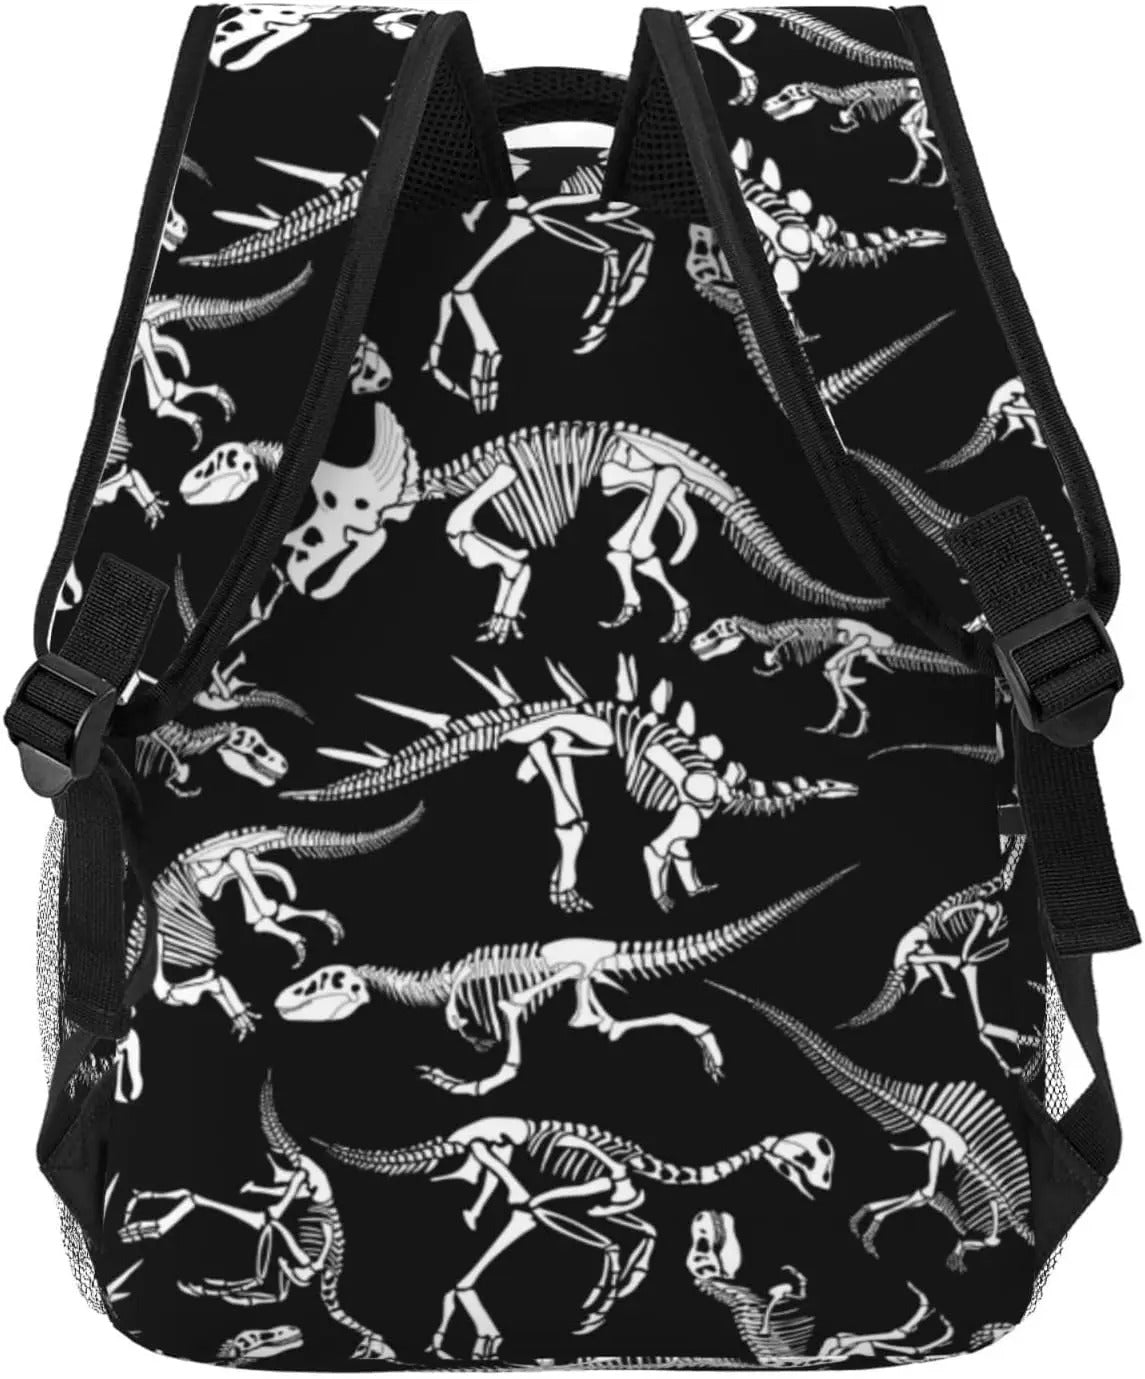 Black Dinosaur Backpack - Color 1